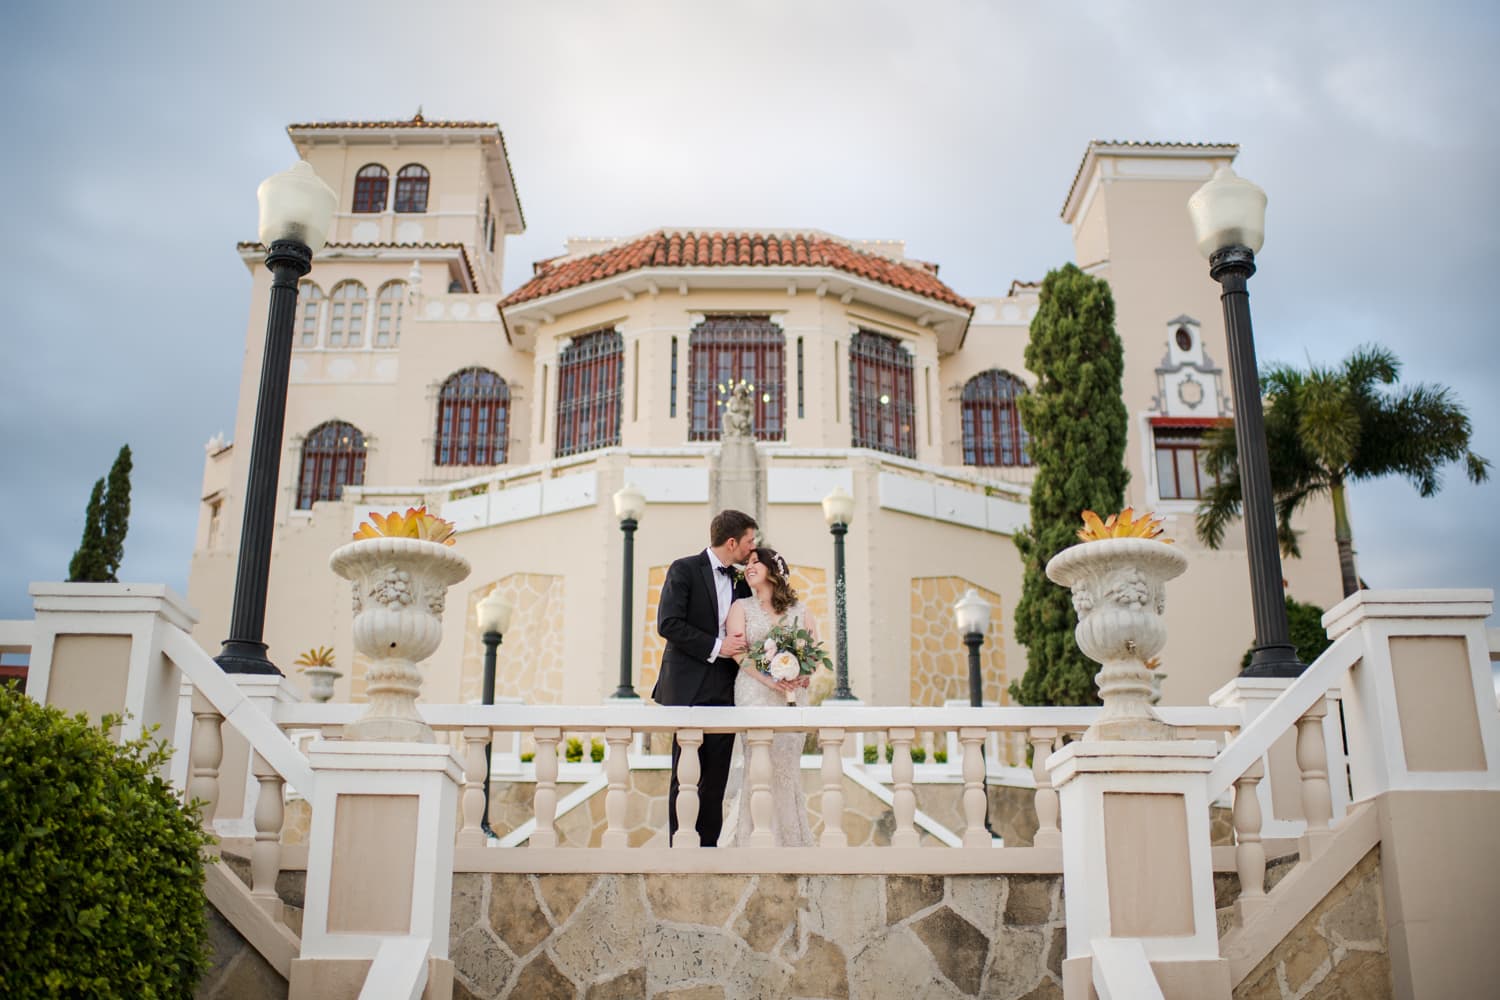 Castillo Serralles wedding photography by Puerto Rico photographer Camille Fontanez